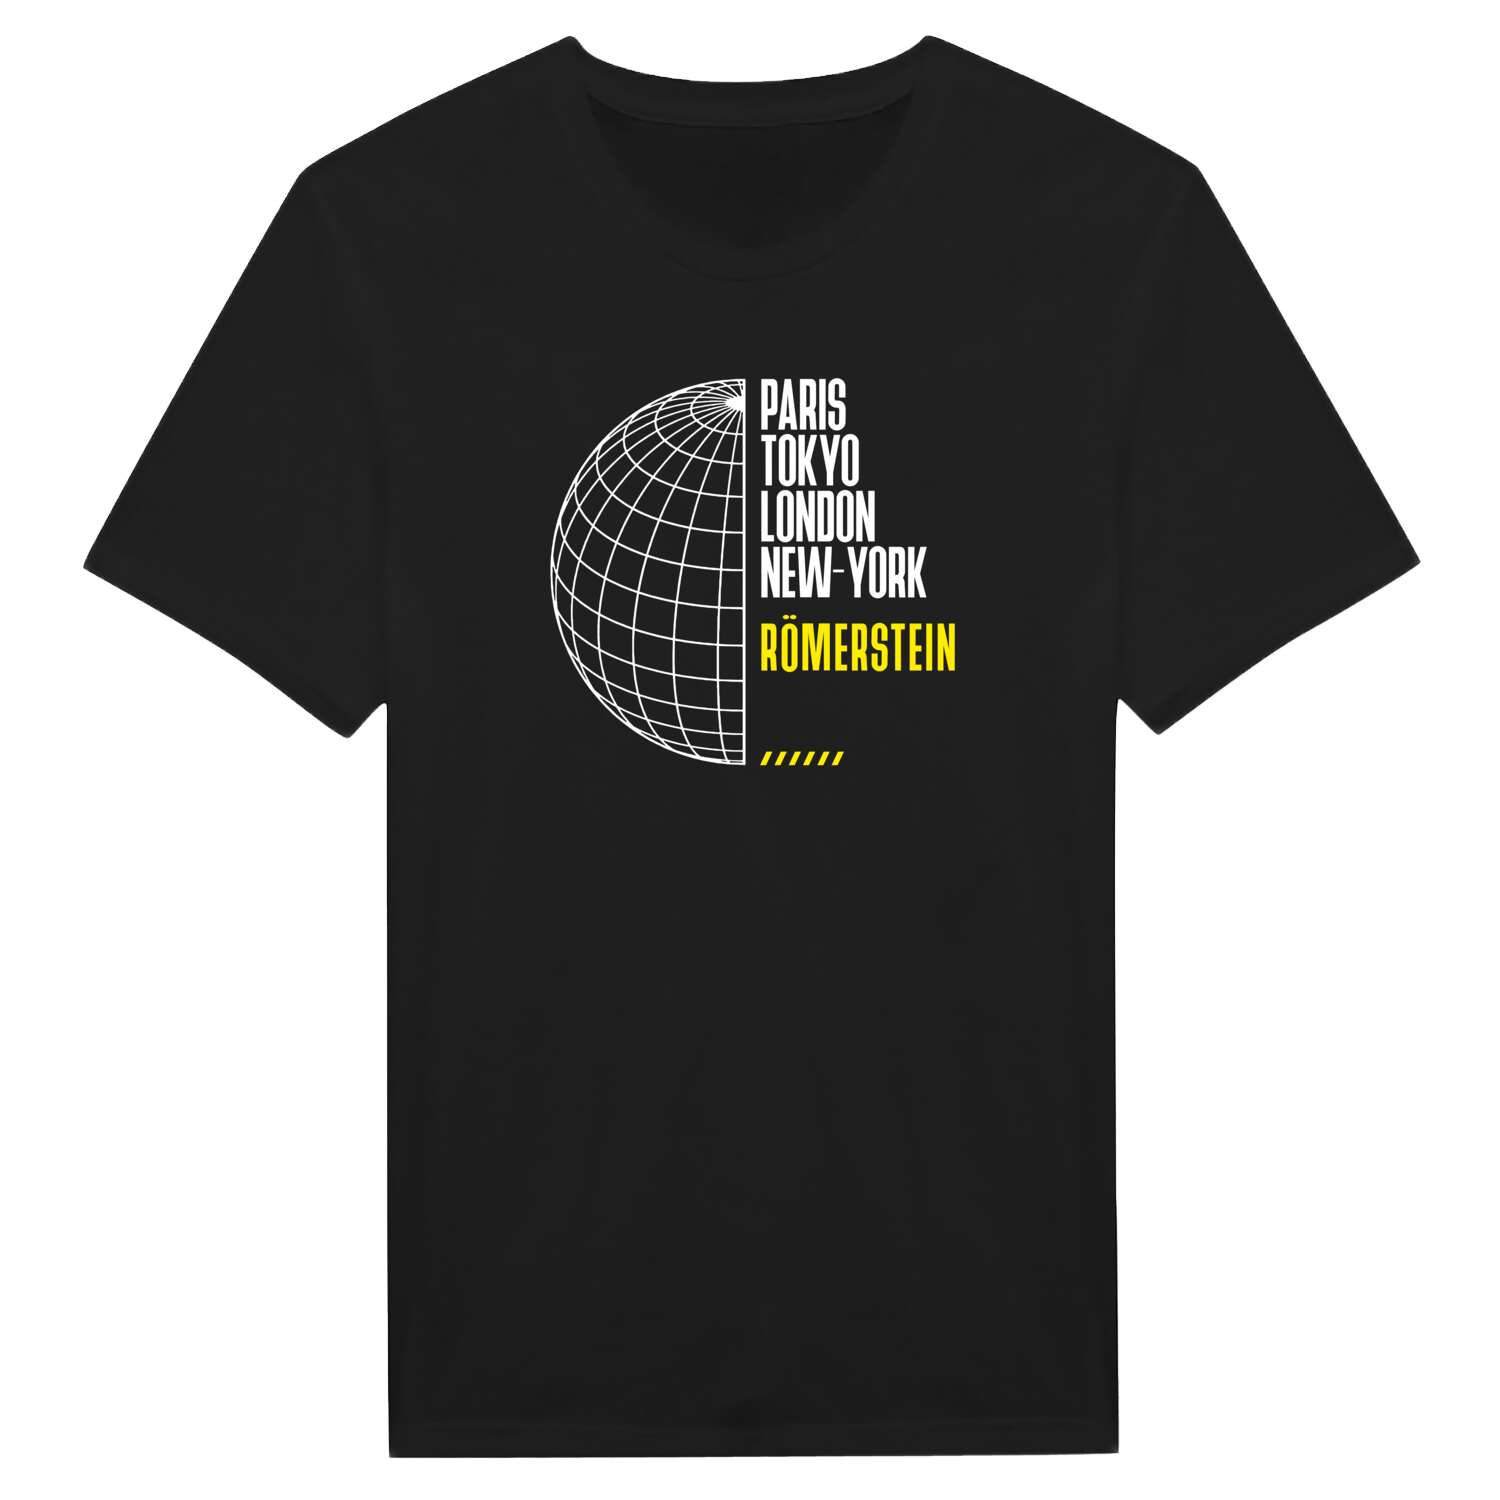 Römerstein T-Shirt »Paris Tokyo London«